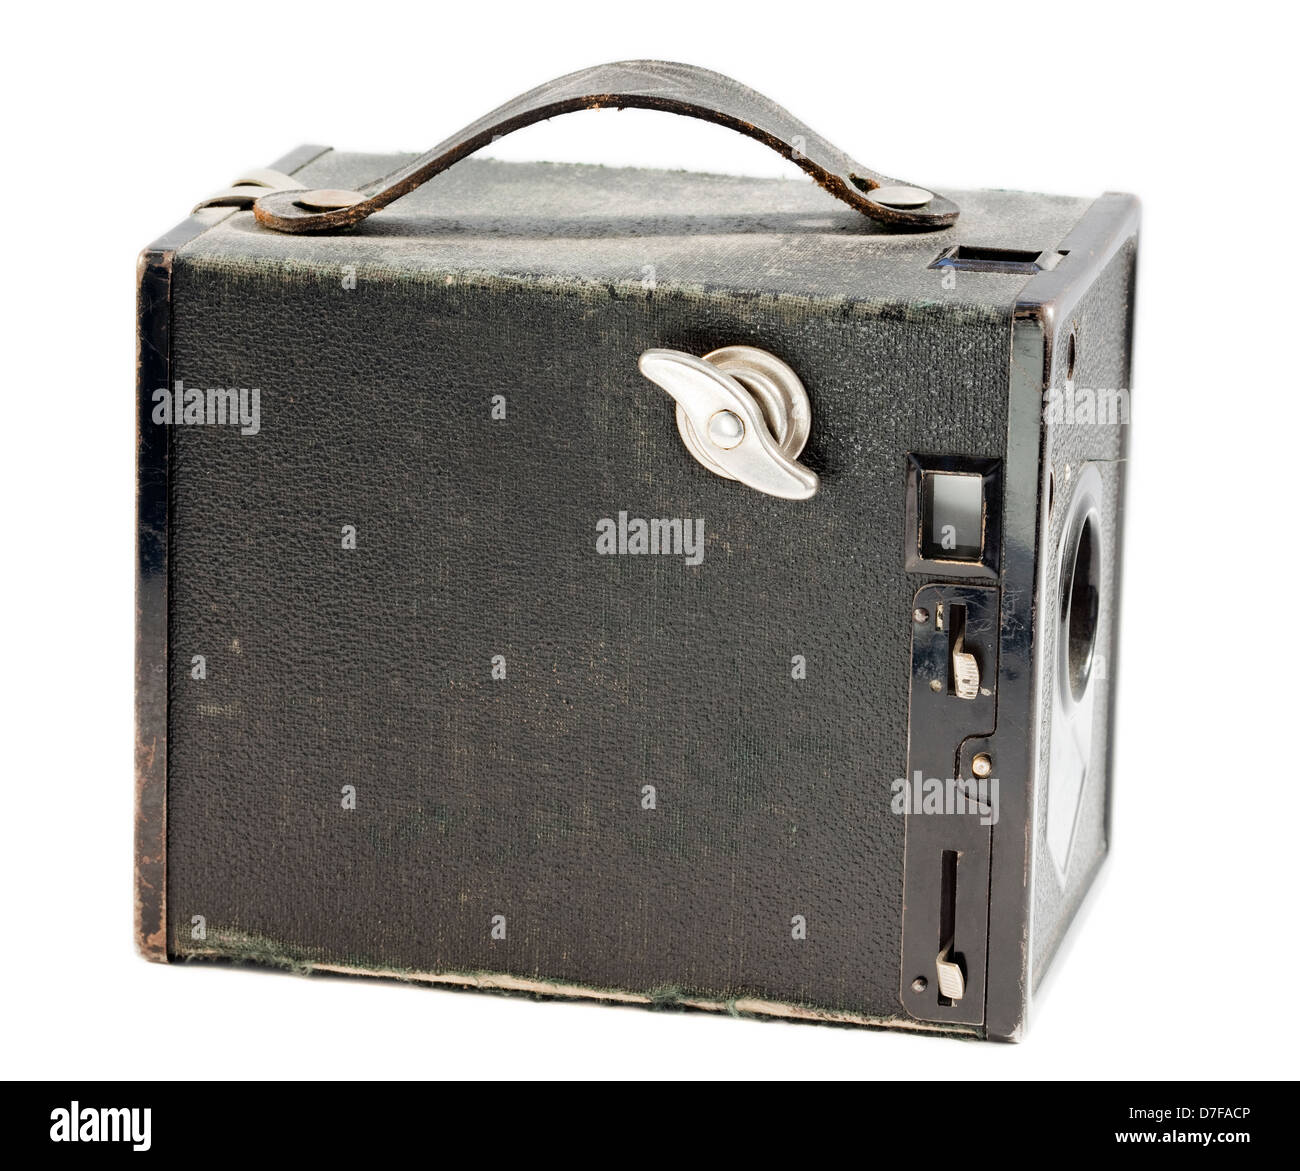 Vintage cámara estenopeica aislado sobre fondo blanco. Foto de stock